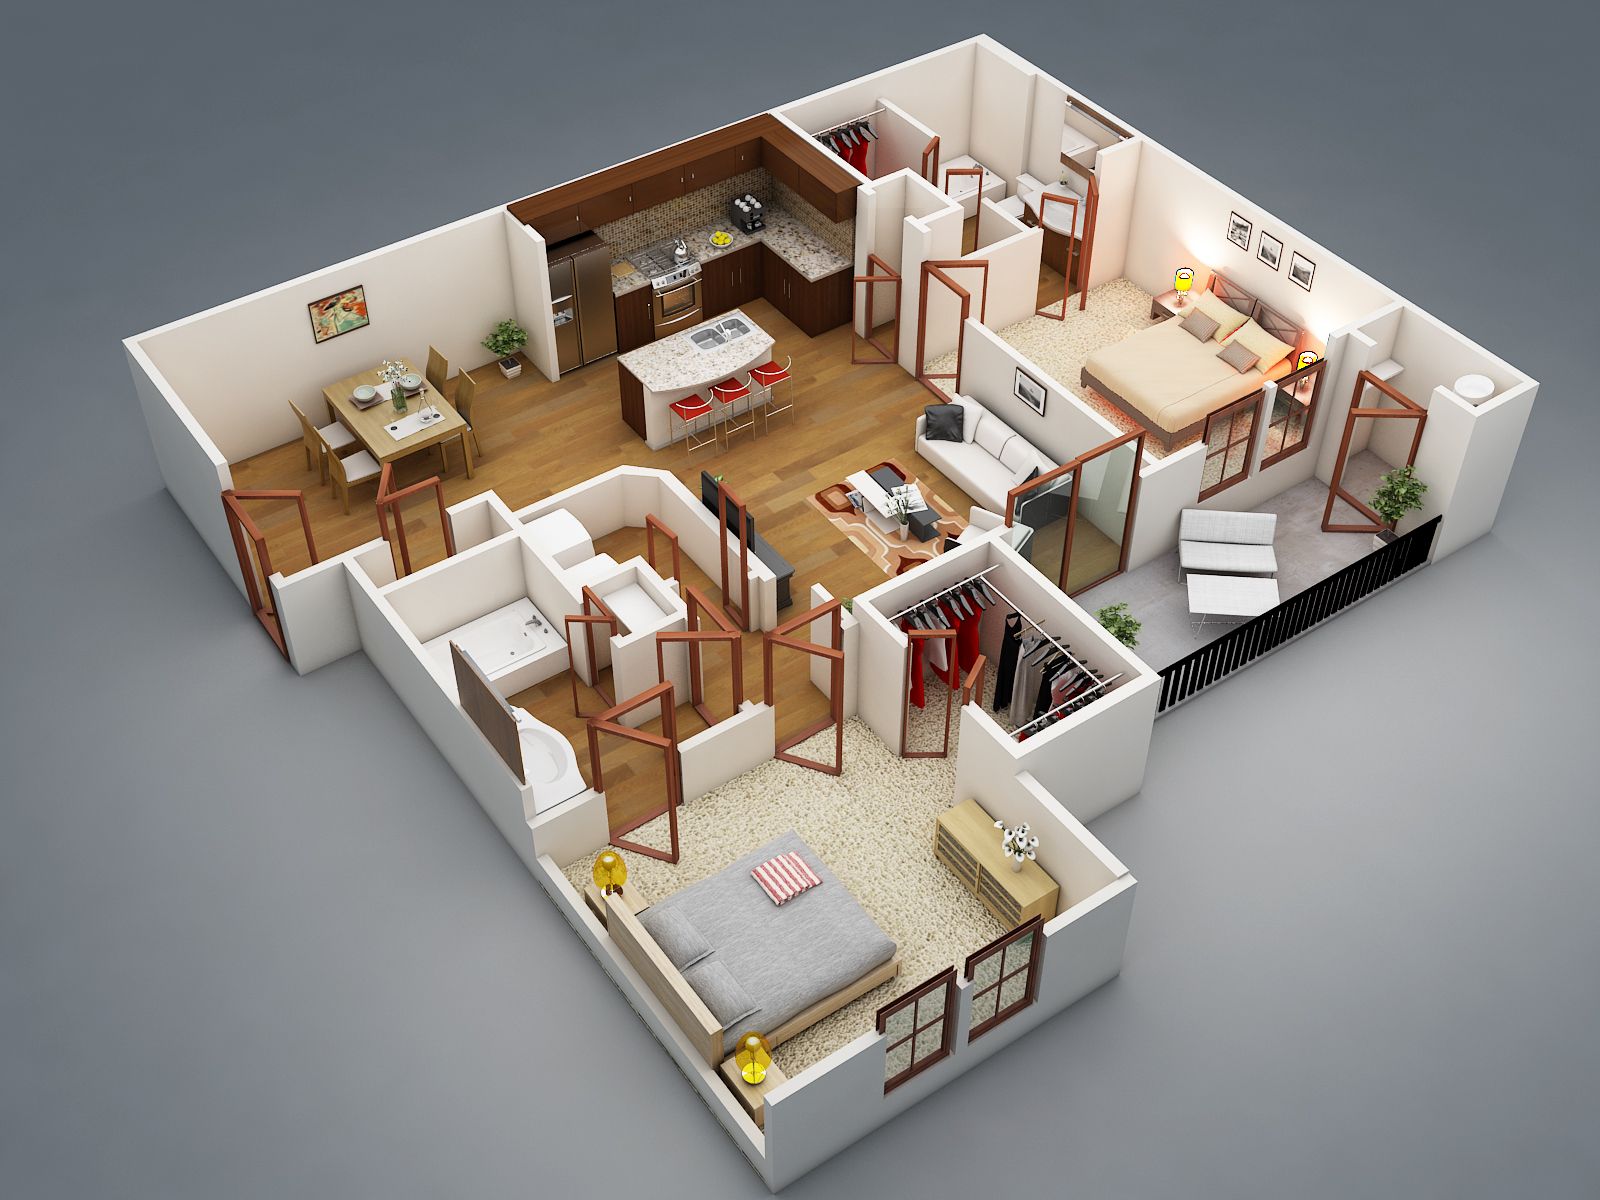 مزایای پلان های سه بعدی در طراحی خانه 